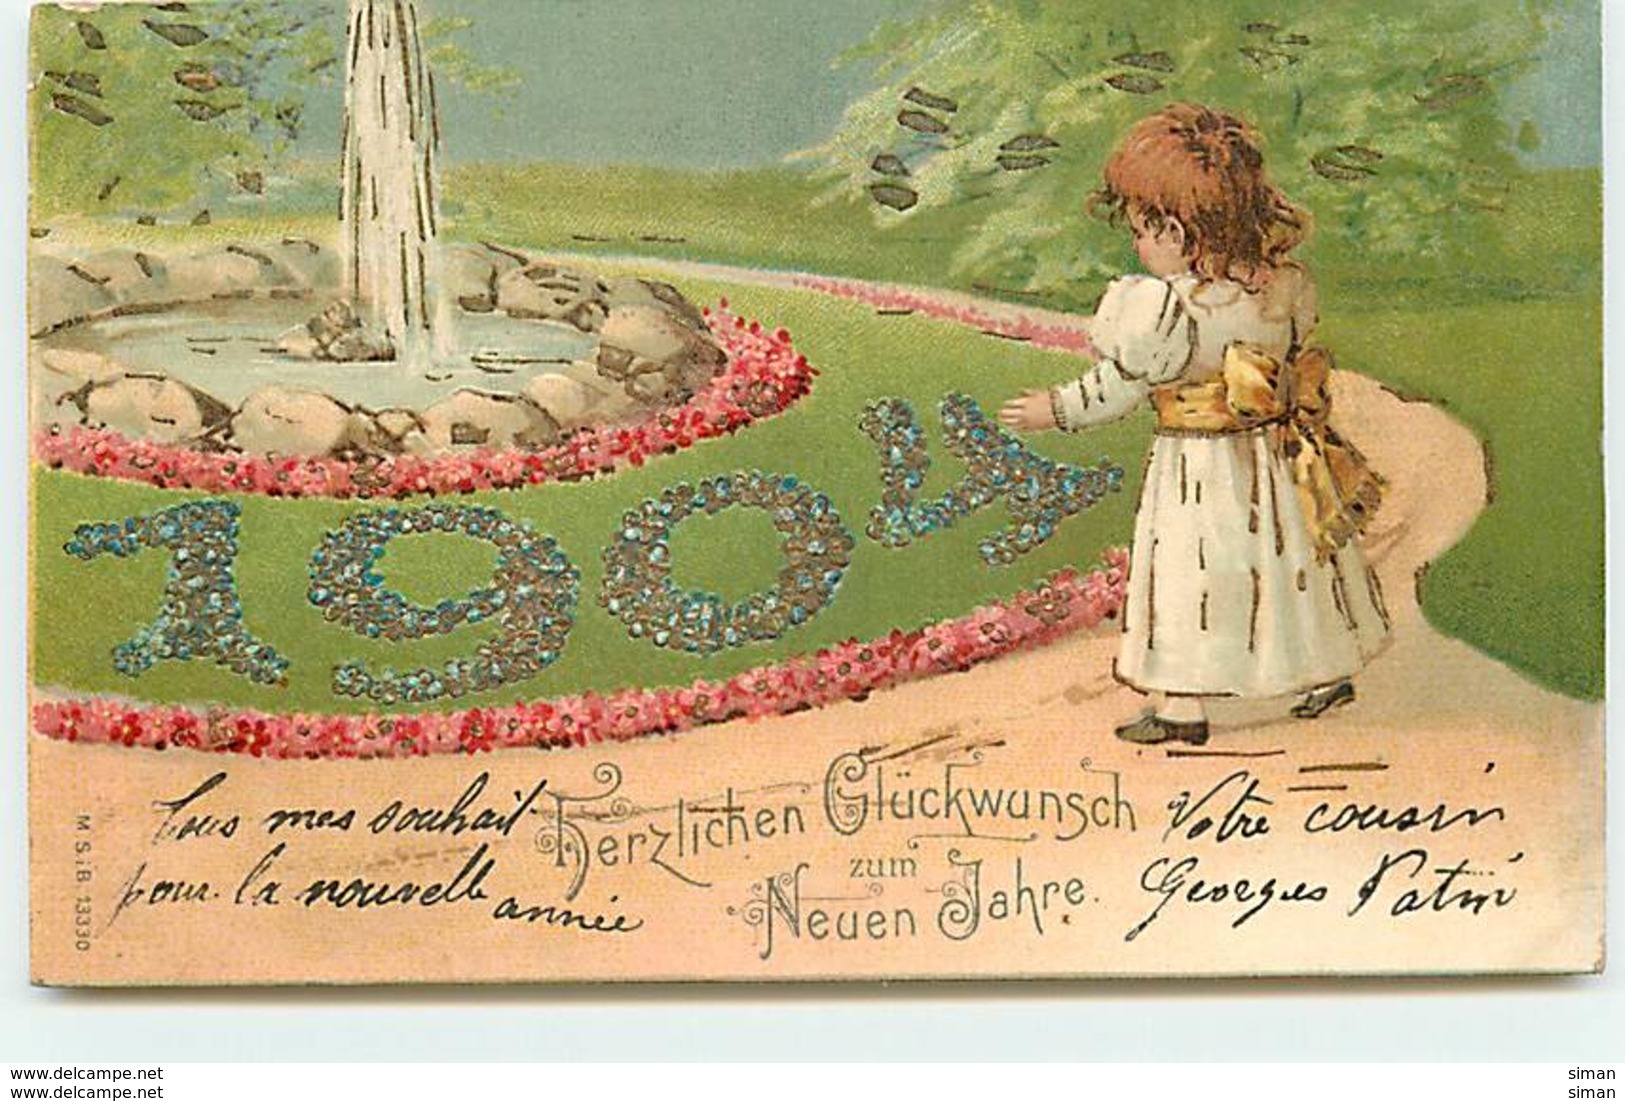 N°13082 - Carte Gaufrée - Herzlichen Glückwunsch Zum Neuen Jahre - 1904 - Fillette - Anno Nuovo